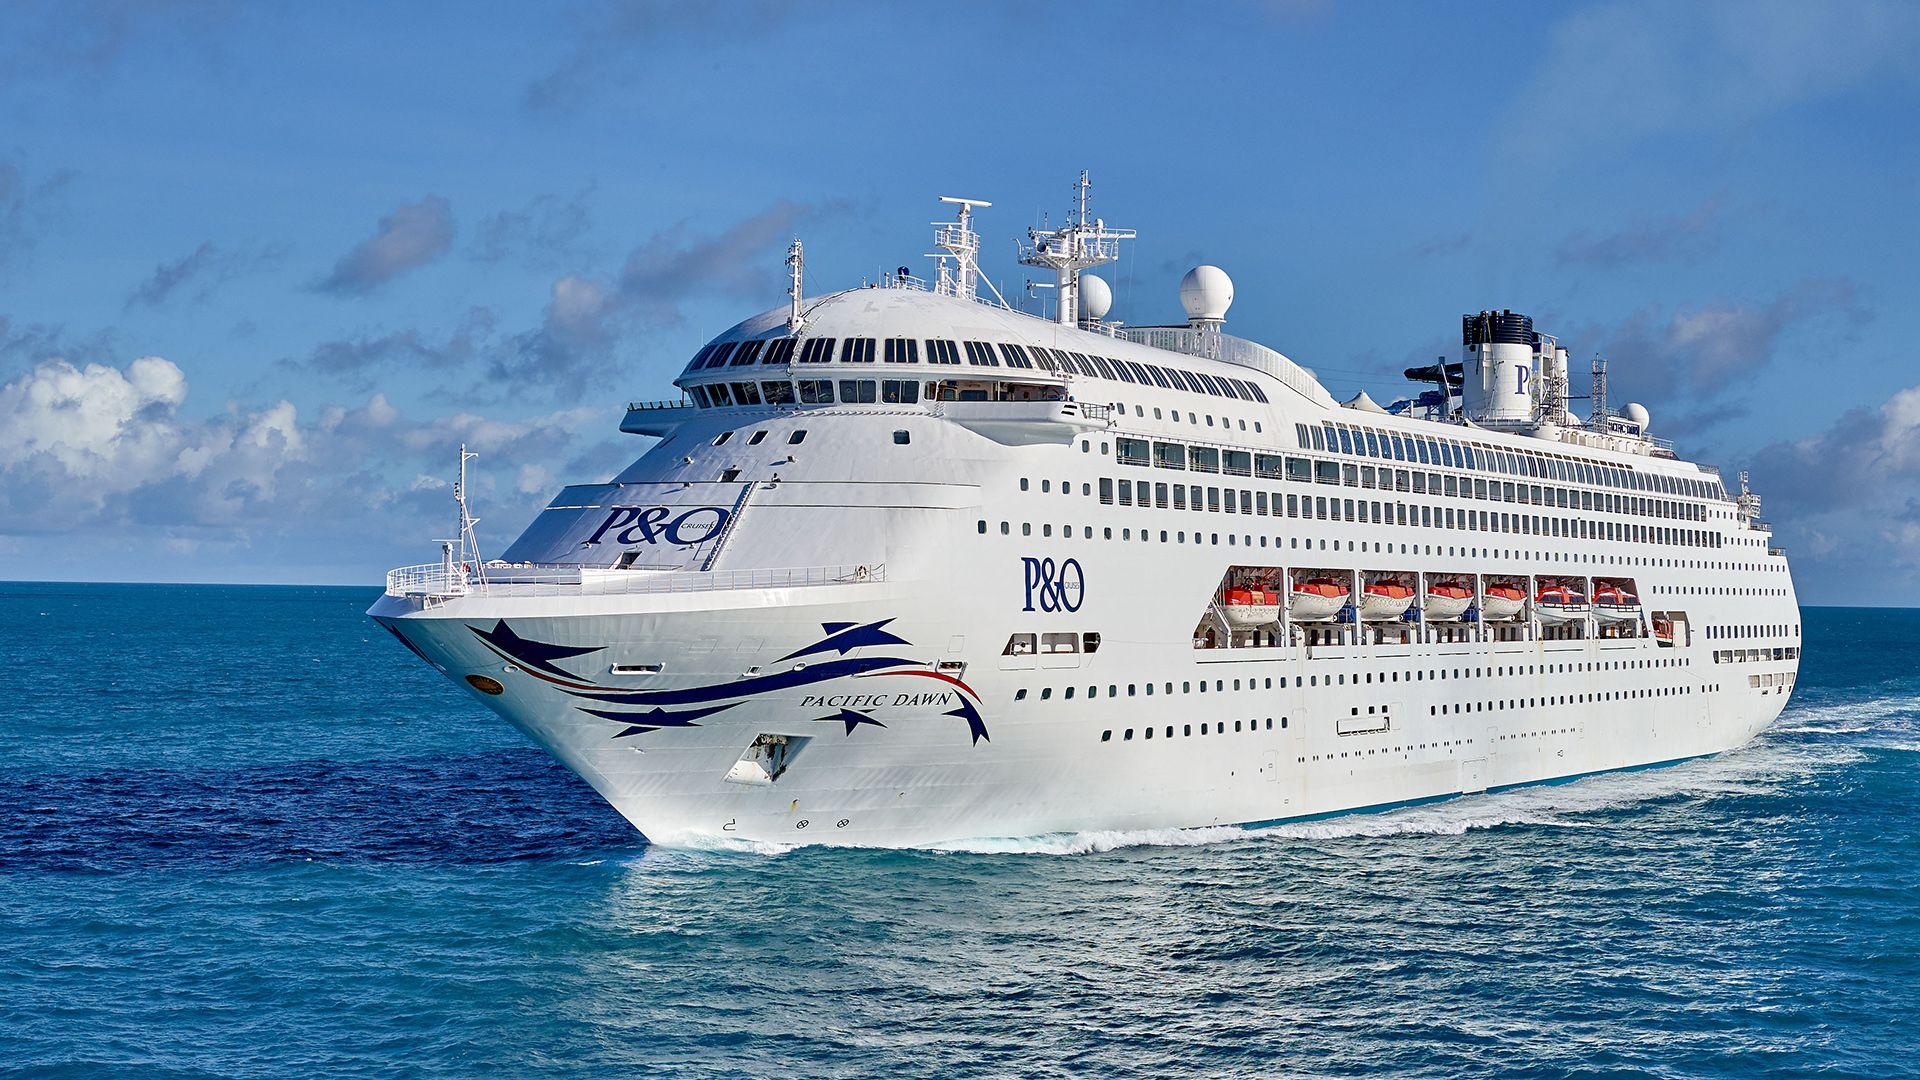 kangaroo island tours for cruise ship passengers